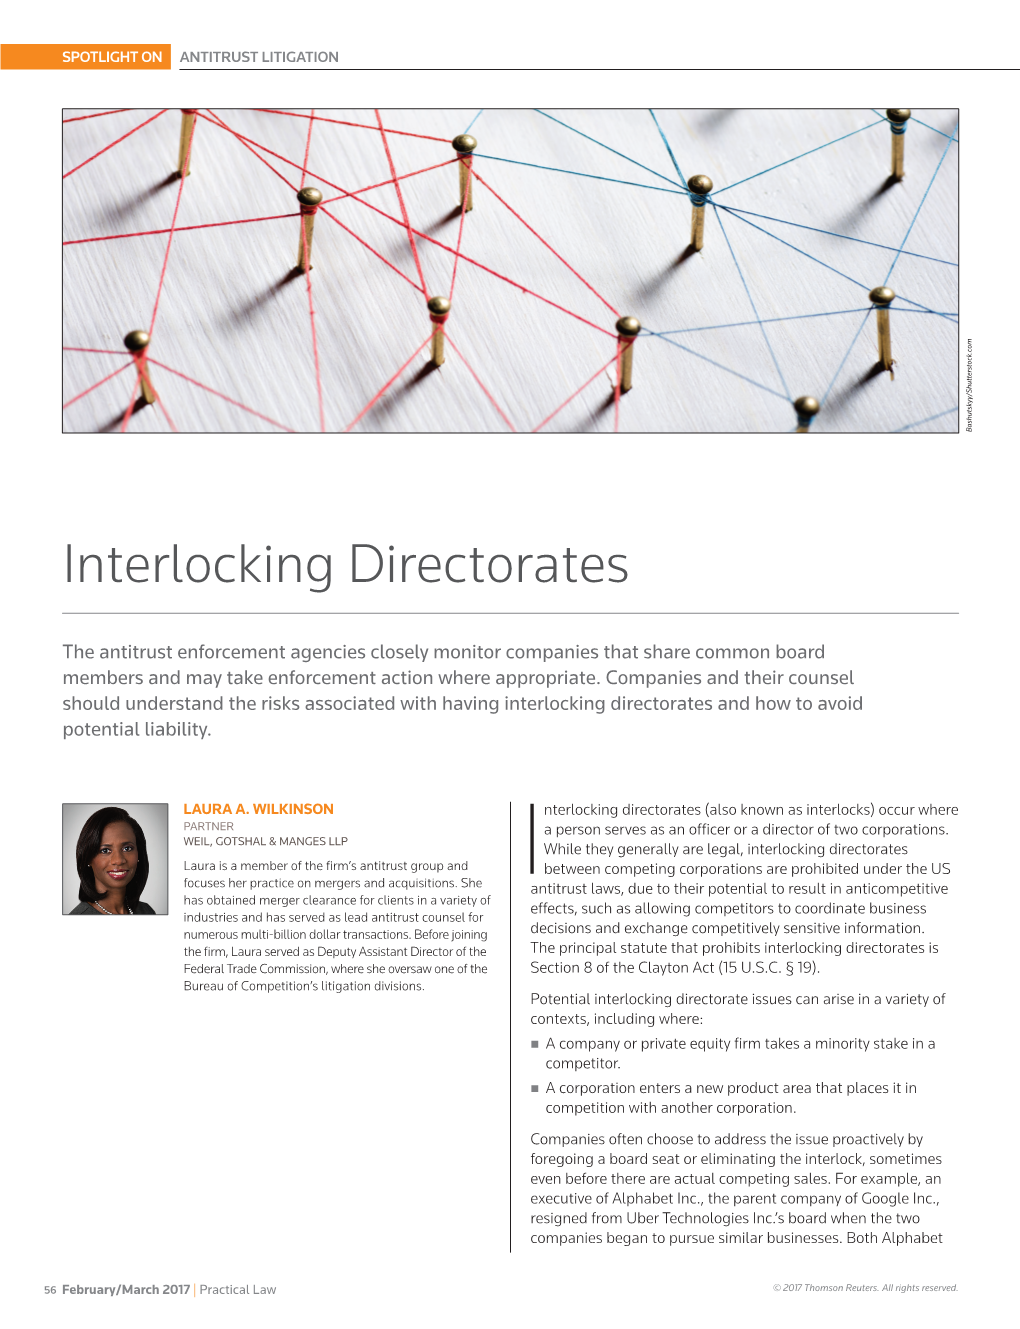 Interlocking Directorates